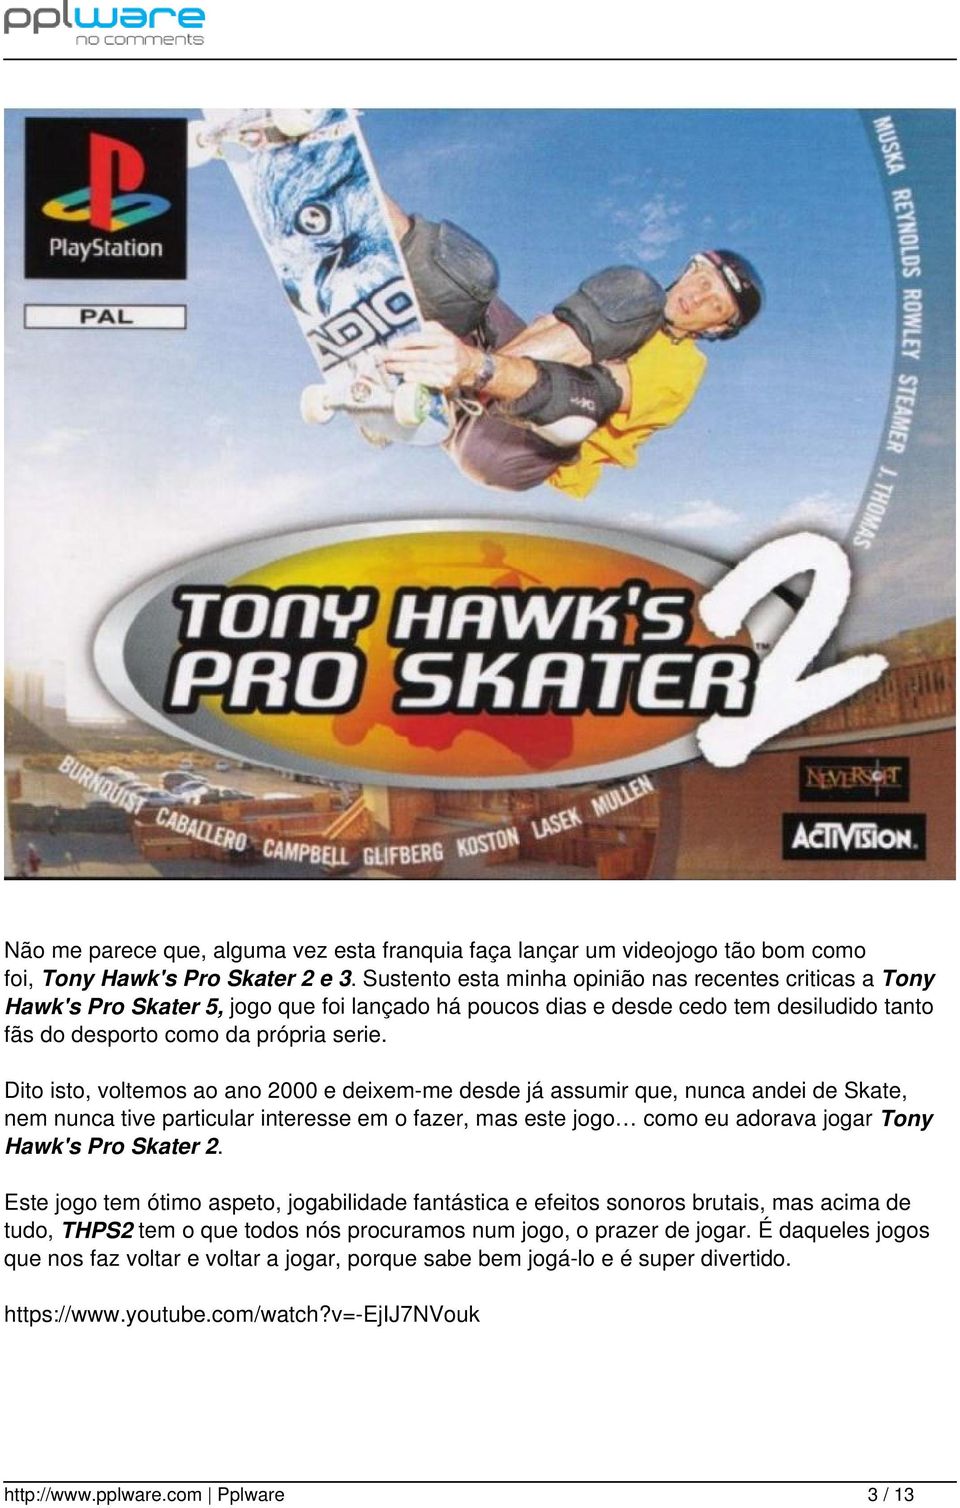 Dito isto, voltemos ao ano 2000 e deixem-me desde já assumir que, nunca andei de Skate, nem nunca tive particular interesse em o fazer, mas este jogo como eu adorava jogar Tony Hawk's Pro Skater 2.